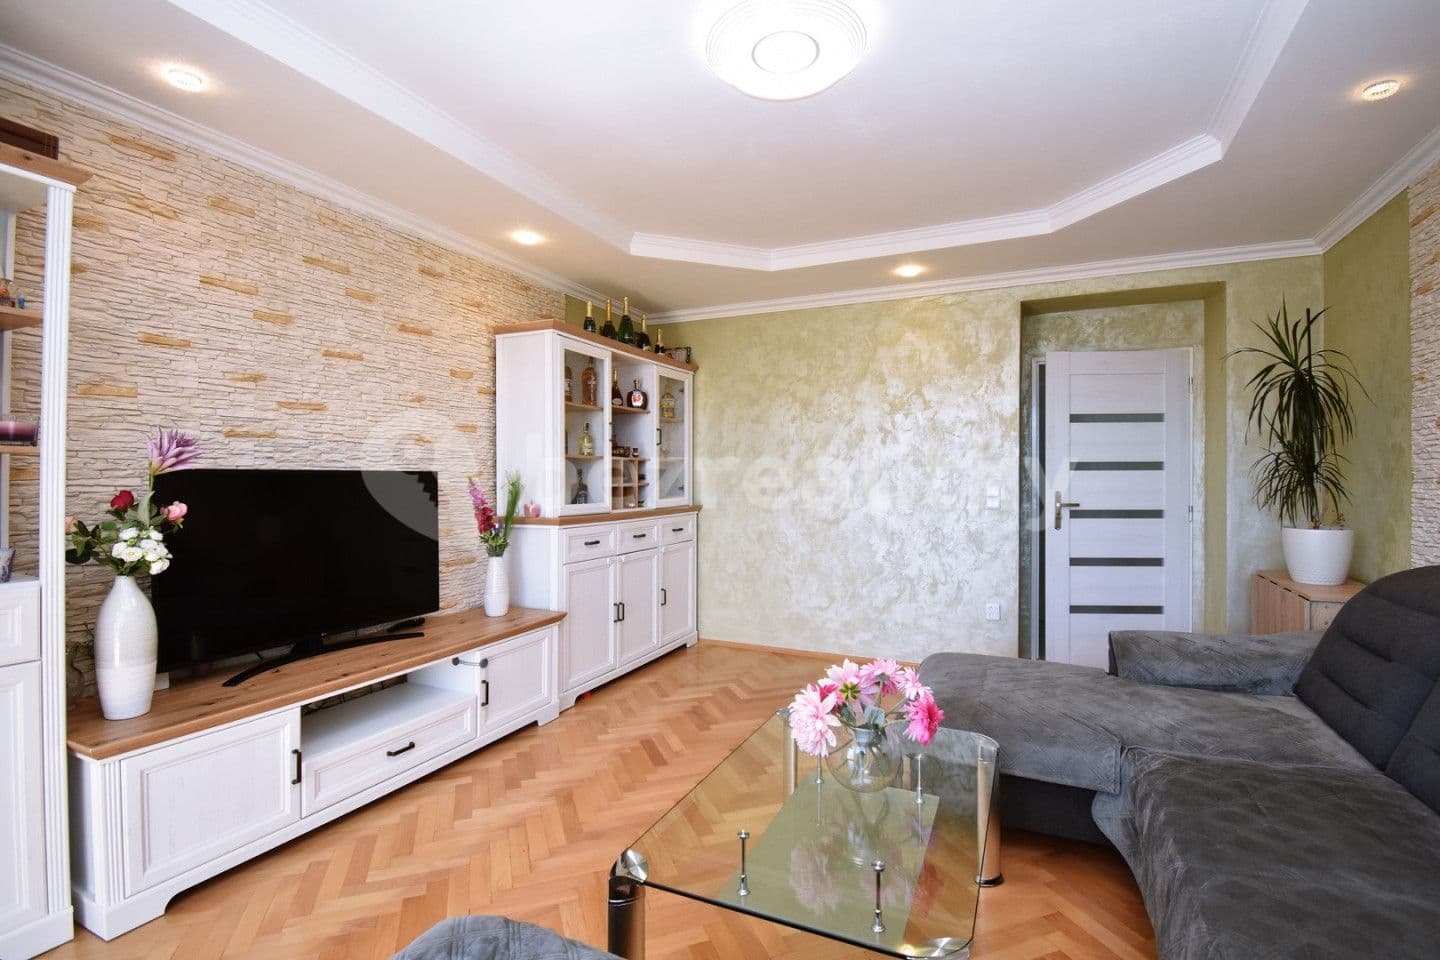 3 bedroom flat for sale, 75 m², Dvořákova, Mladá Boleslav, Středočeský Region